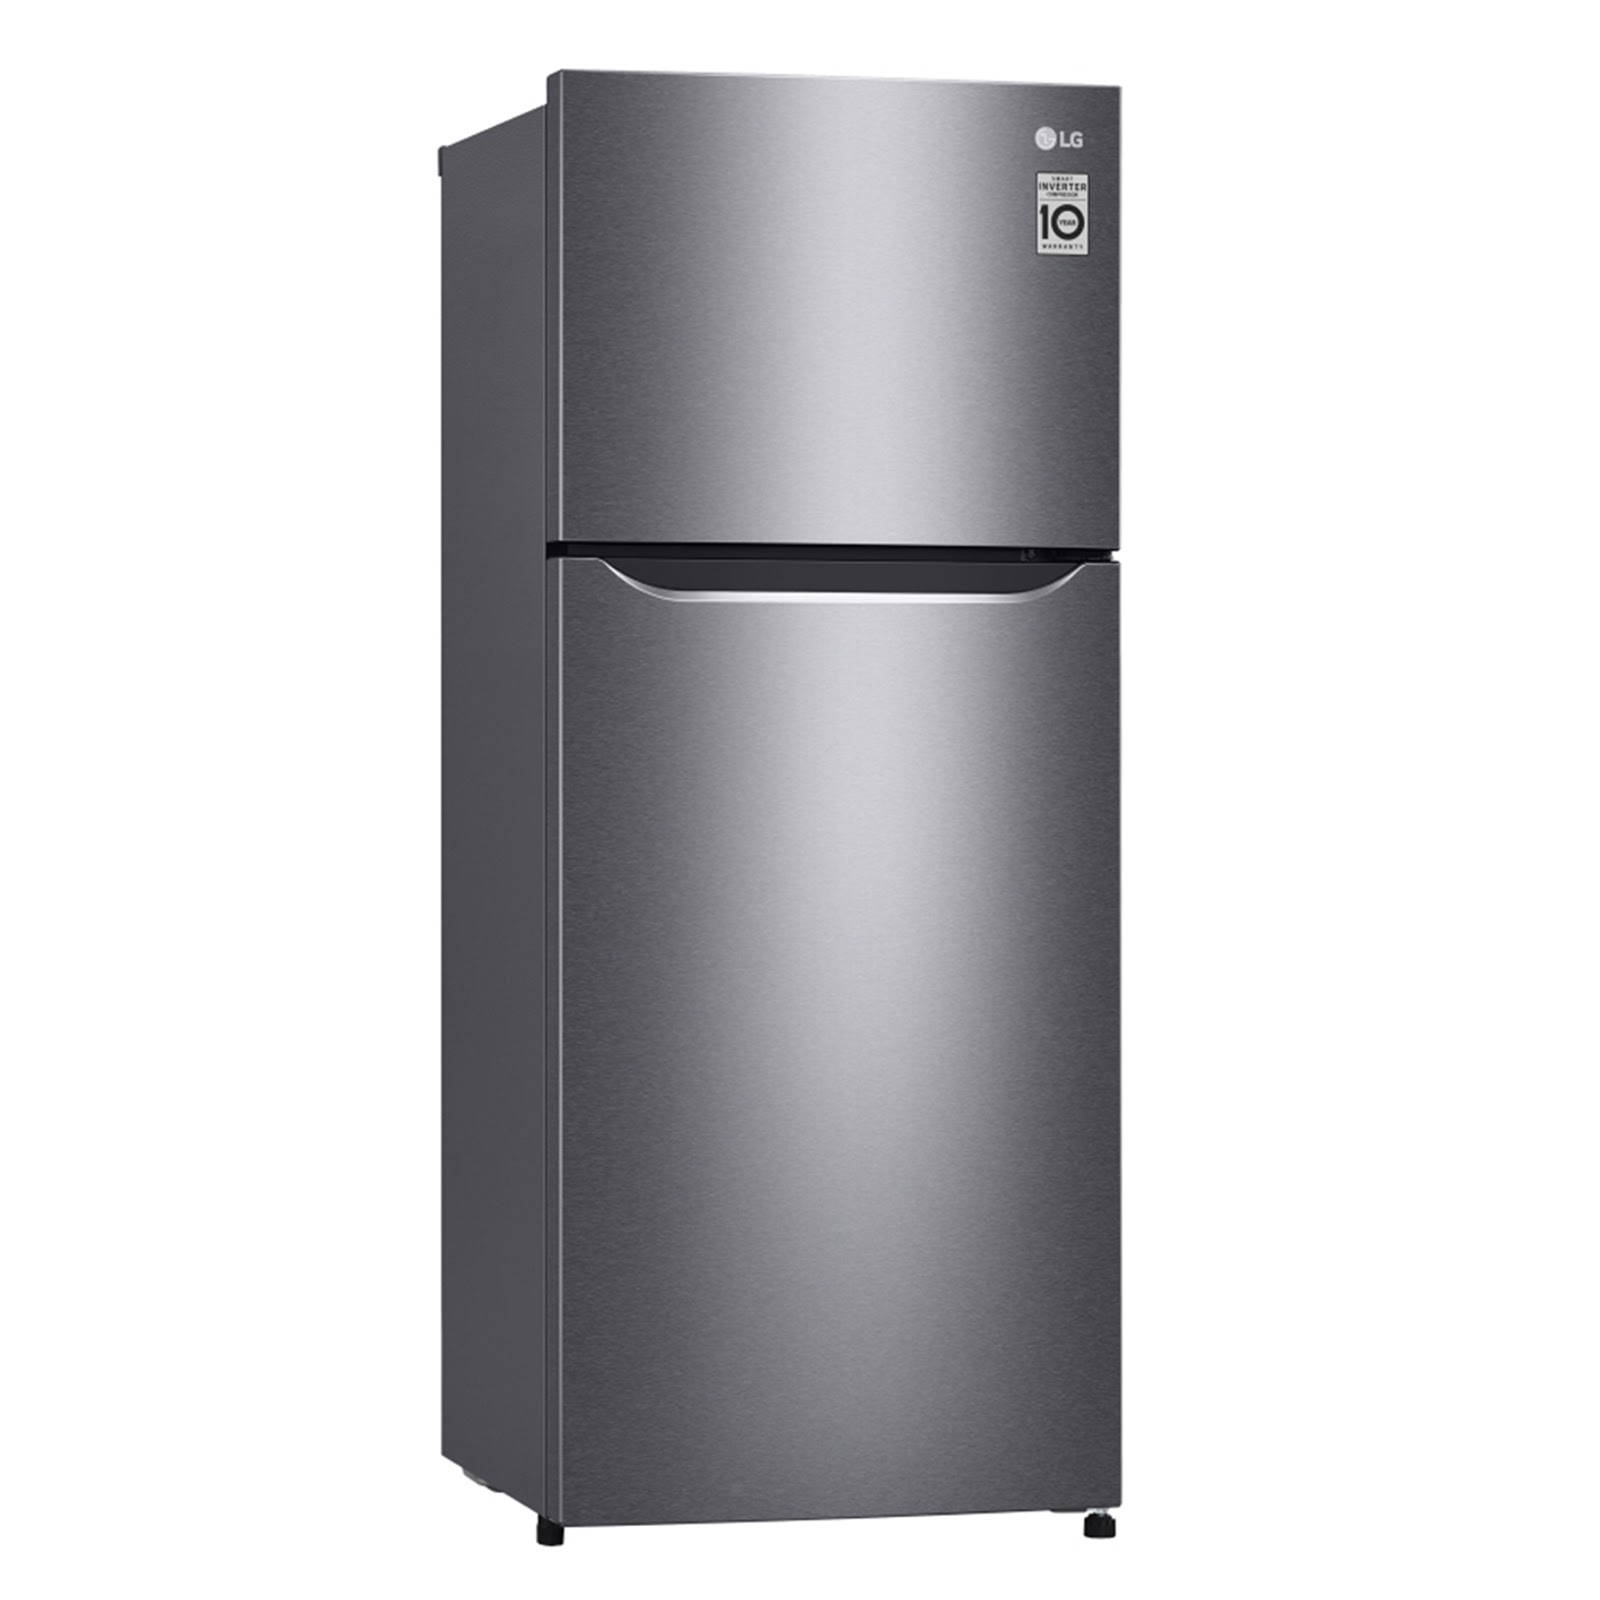 Холодильники no frost купить в москве. Холодильник LG GN-h702hmhz. Холодильник LG ga-b419sdjl (тёмный графит). Холодильник LG ga-b379slul. Холодильник LG ga-b459smqm.